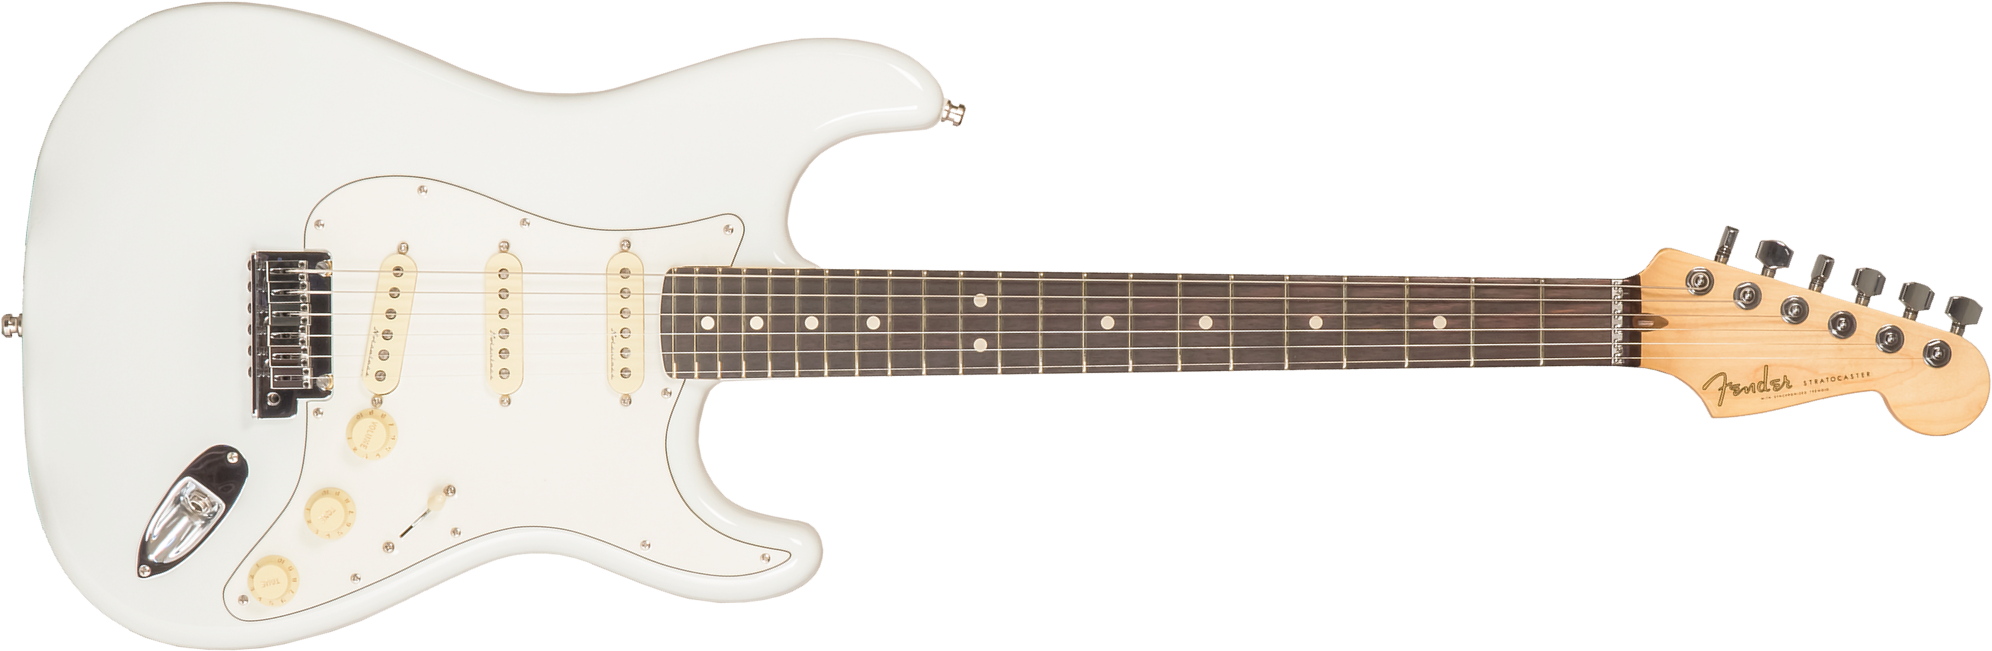 Fender Custom Shop Jeff Beck Strat 3s Trem Rw #xn17088 - Nos Olympic White - Elektrische gitaar in Str-vorm - Main picture